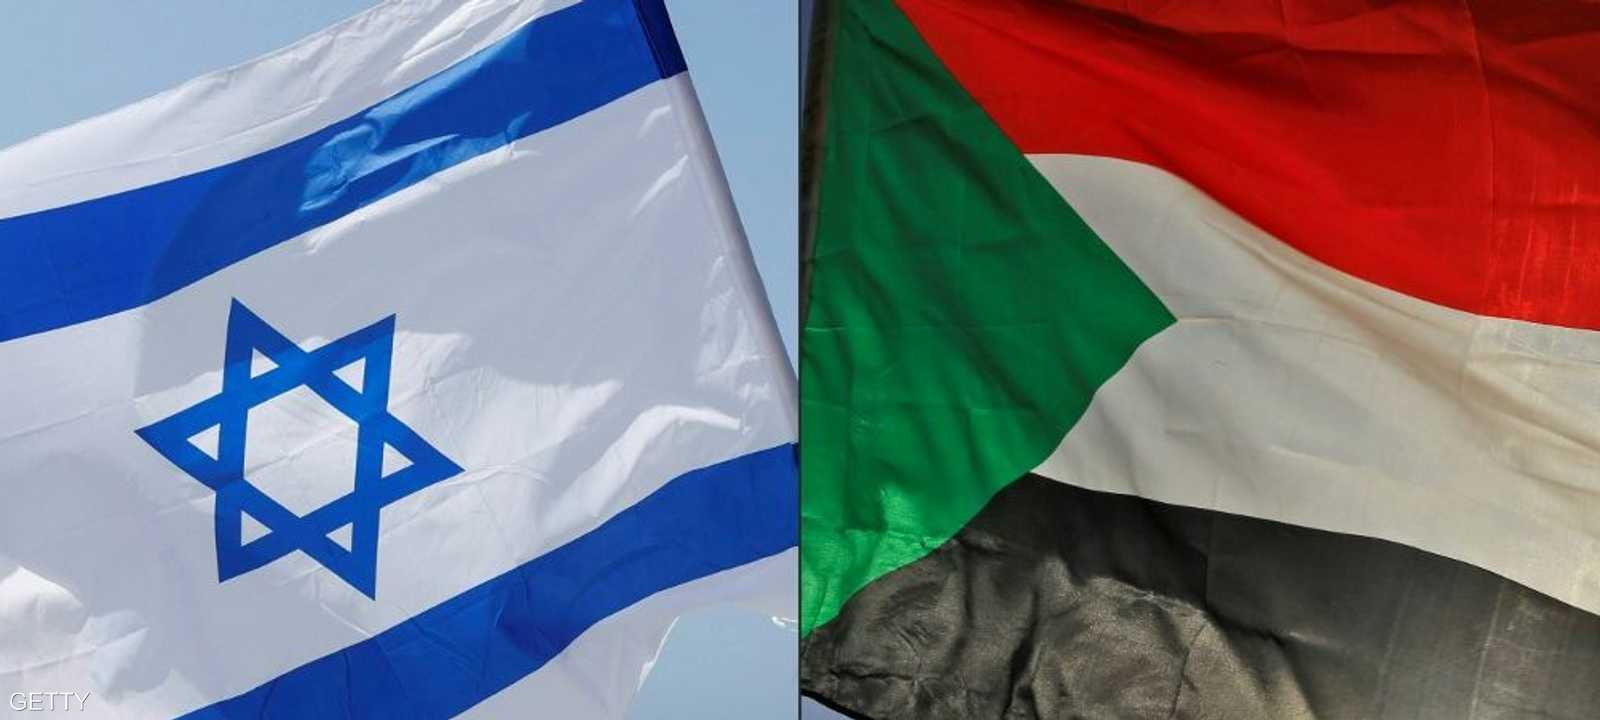 السودان وإسرائيل إعلنا عن اتفاق للسلام في 23 أكتوبر الماضي.